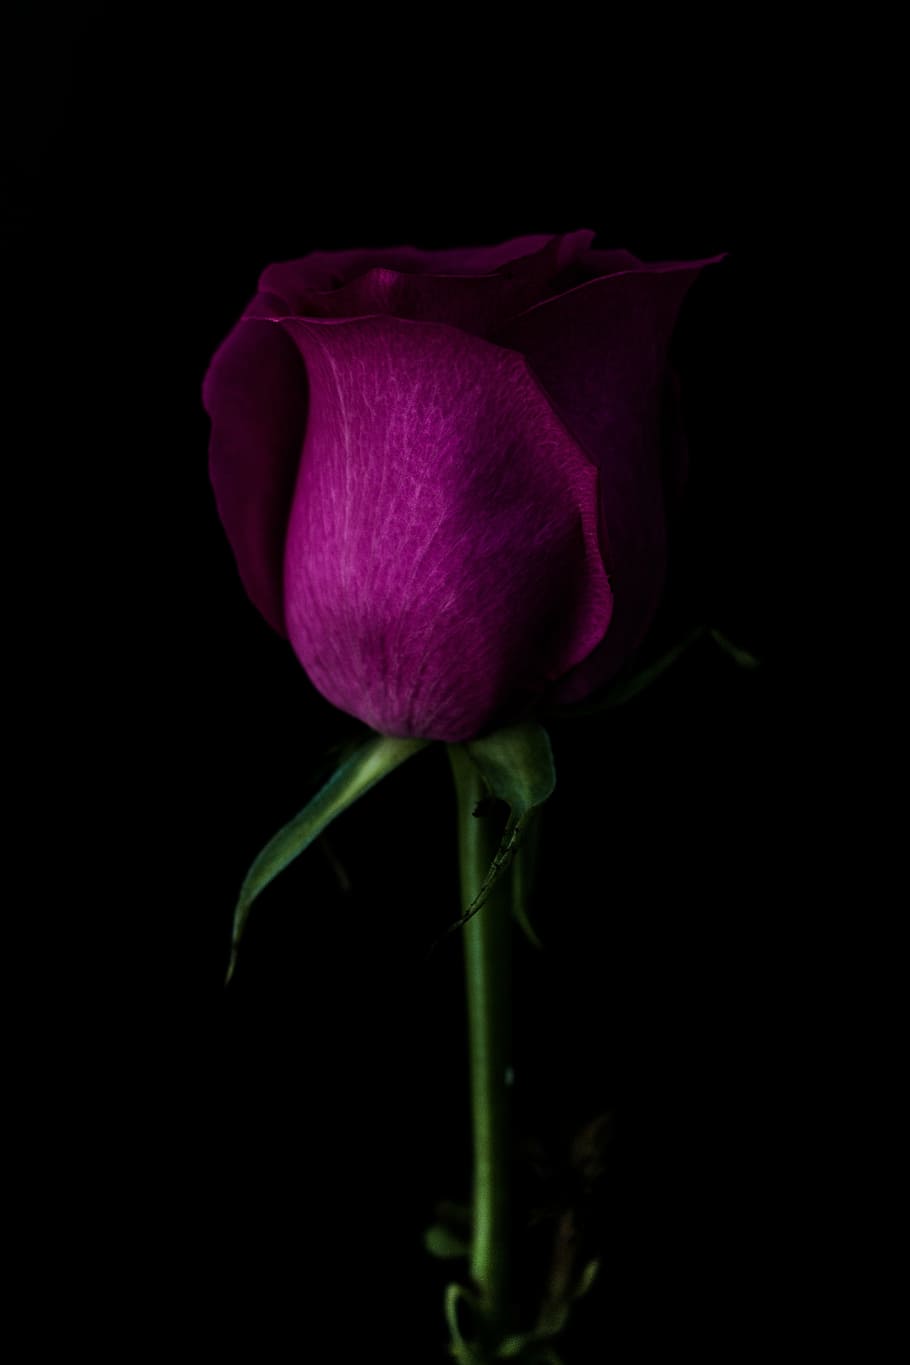 red rose photo, close, purple, petaled, rose, dark, green, leaf, stem, violet